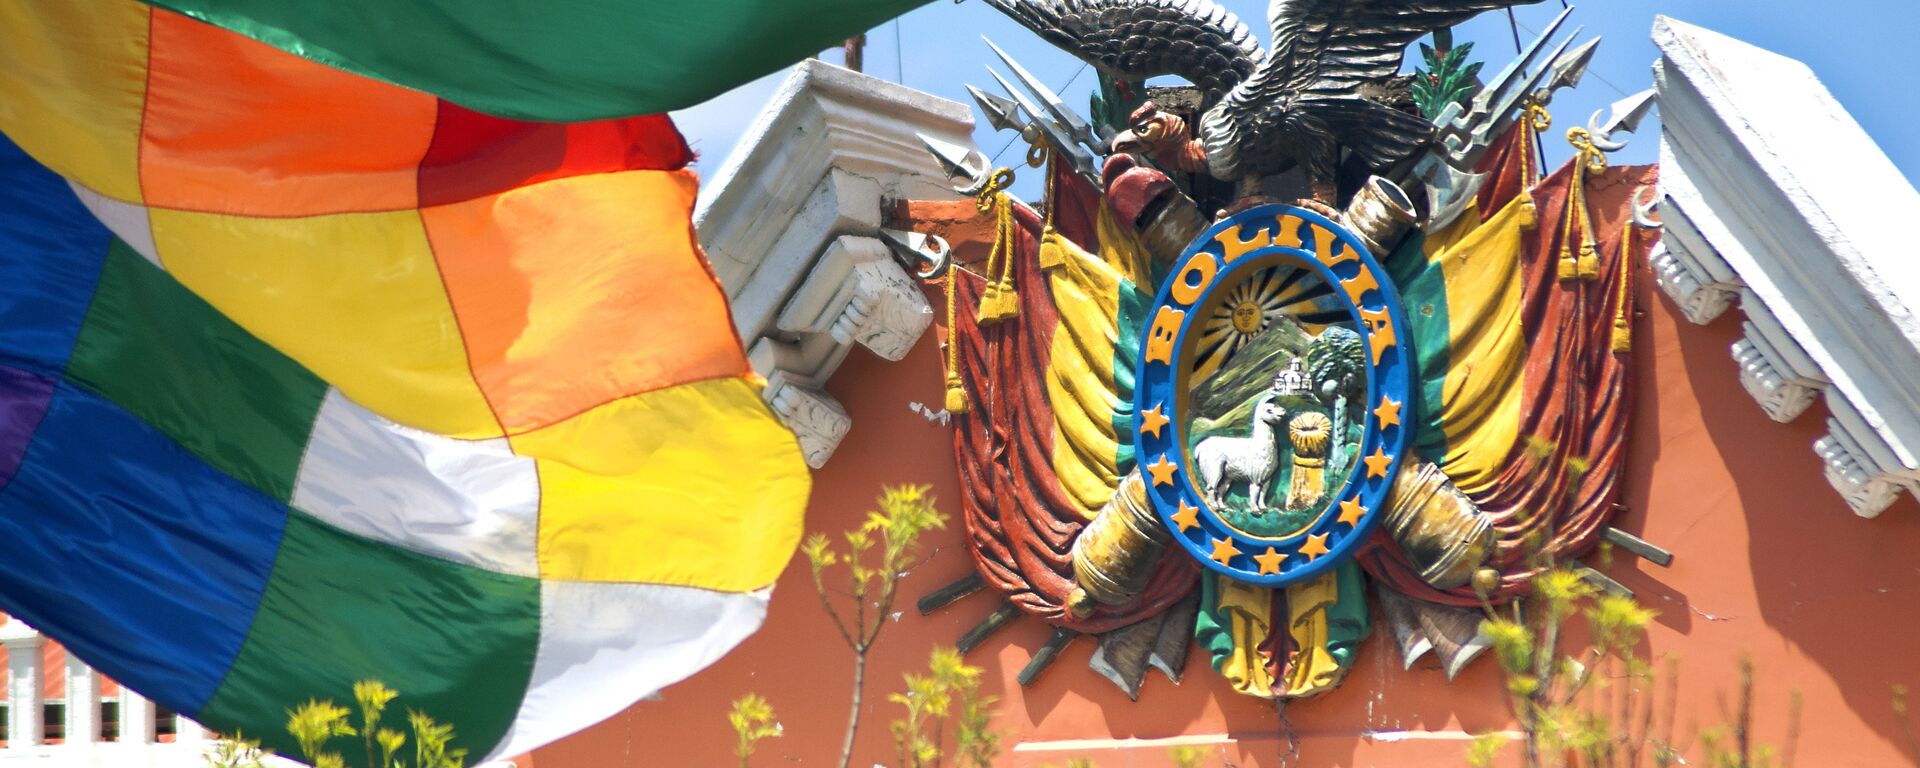 Escudo de Bolivia en el Palacio de Gobierno - Sputnik Mundo, 1920, 03.12.2021